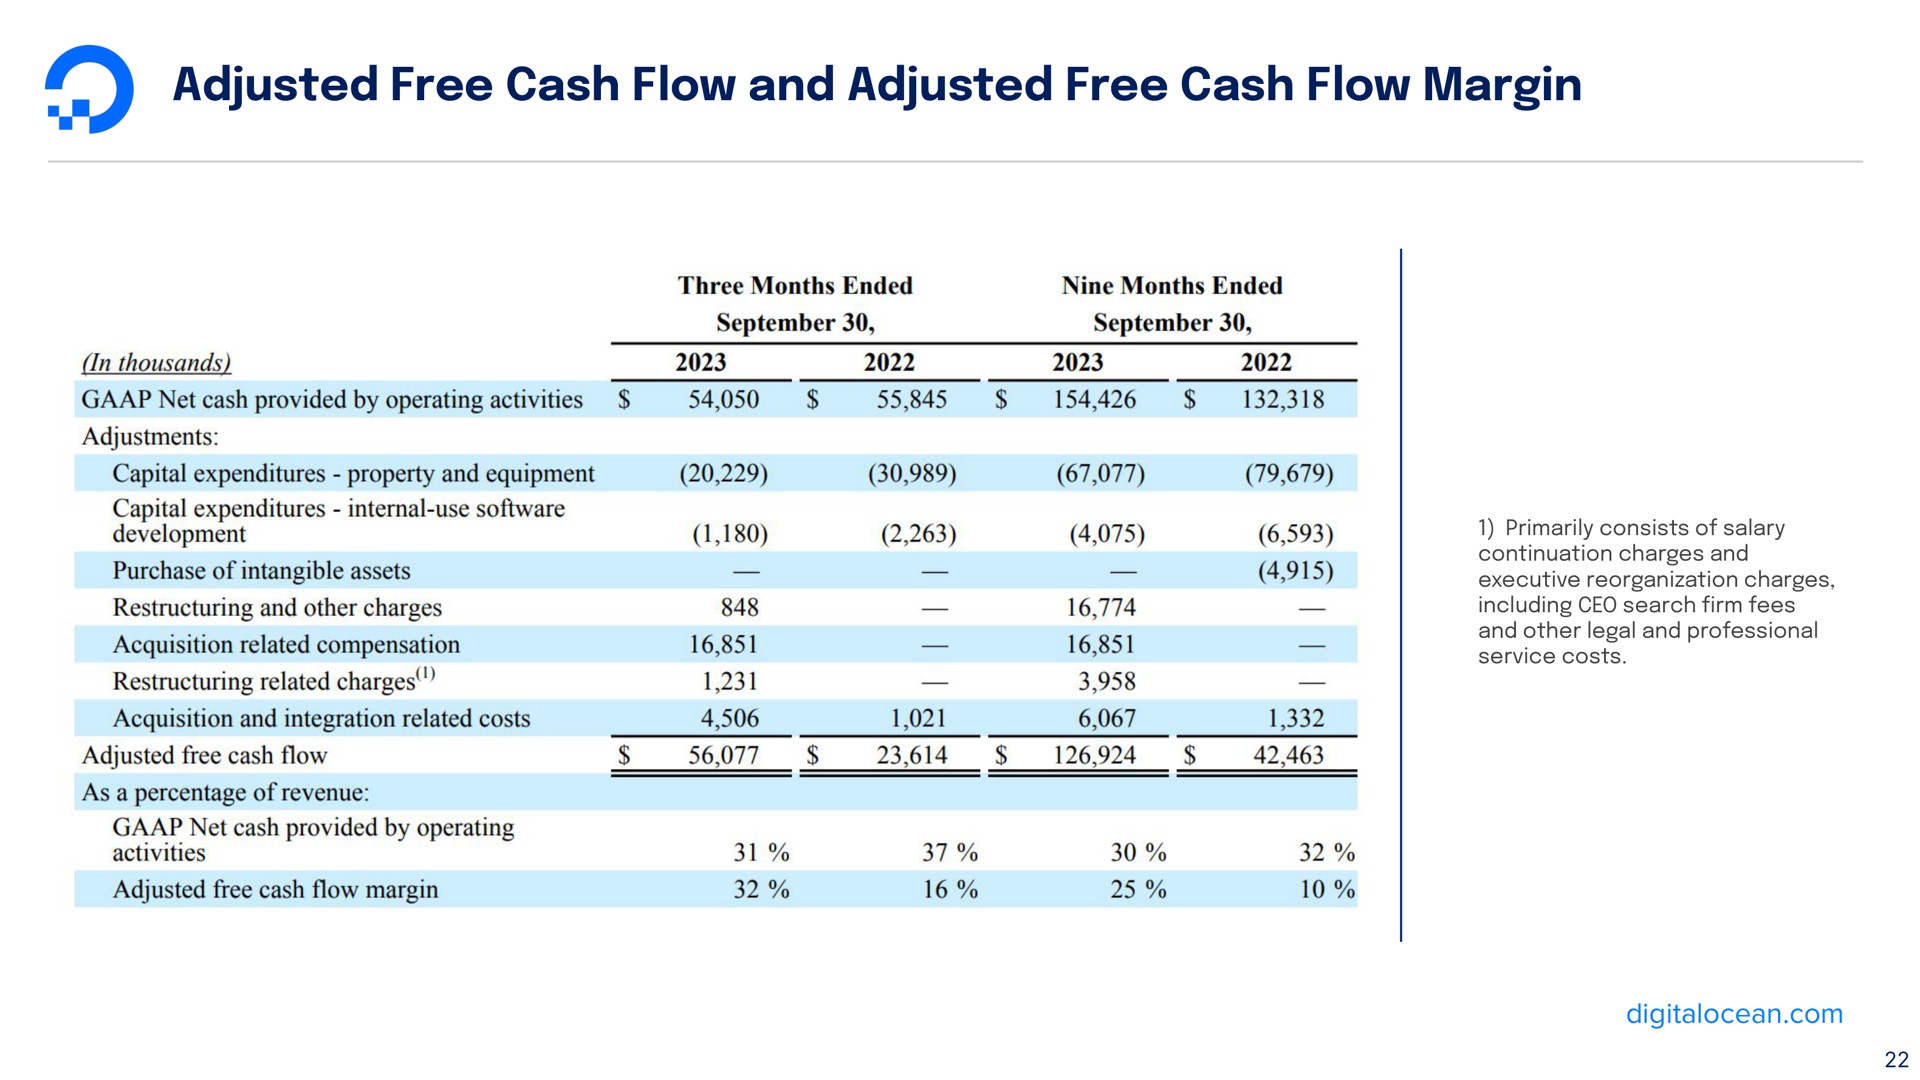 adjusted free cash flow and adjusted free cash flow margin | DigitalOcean